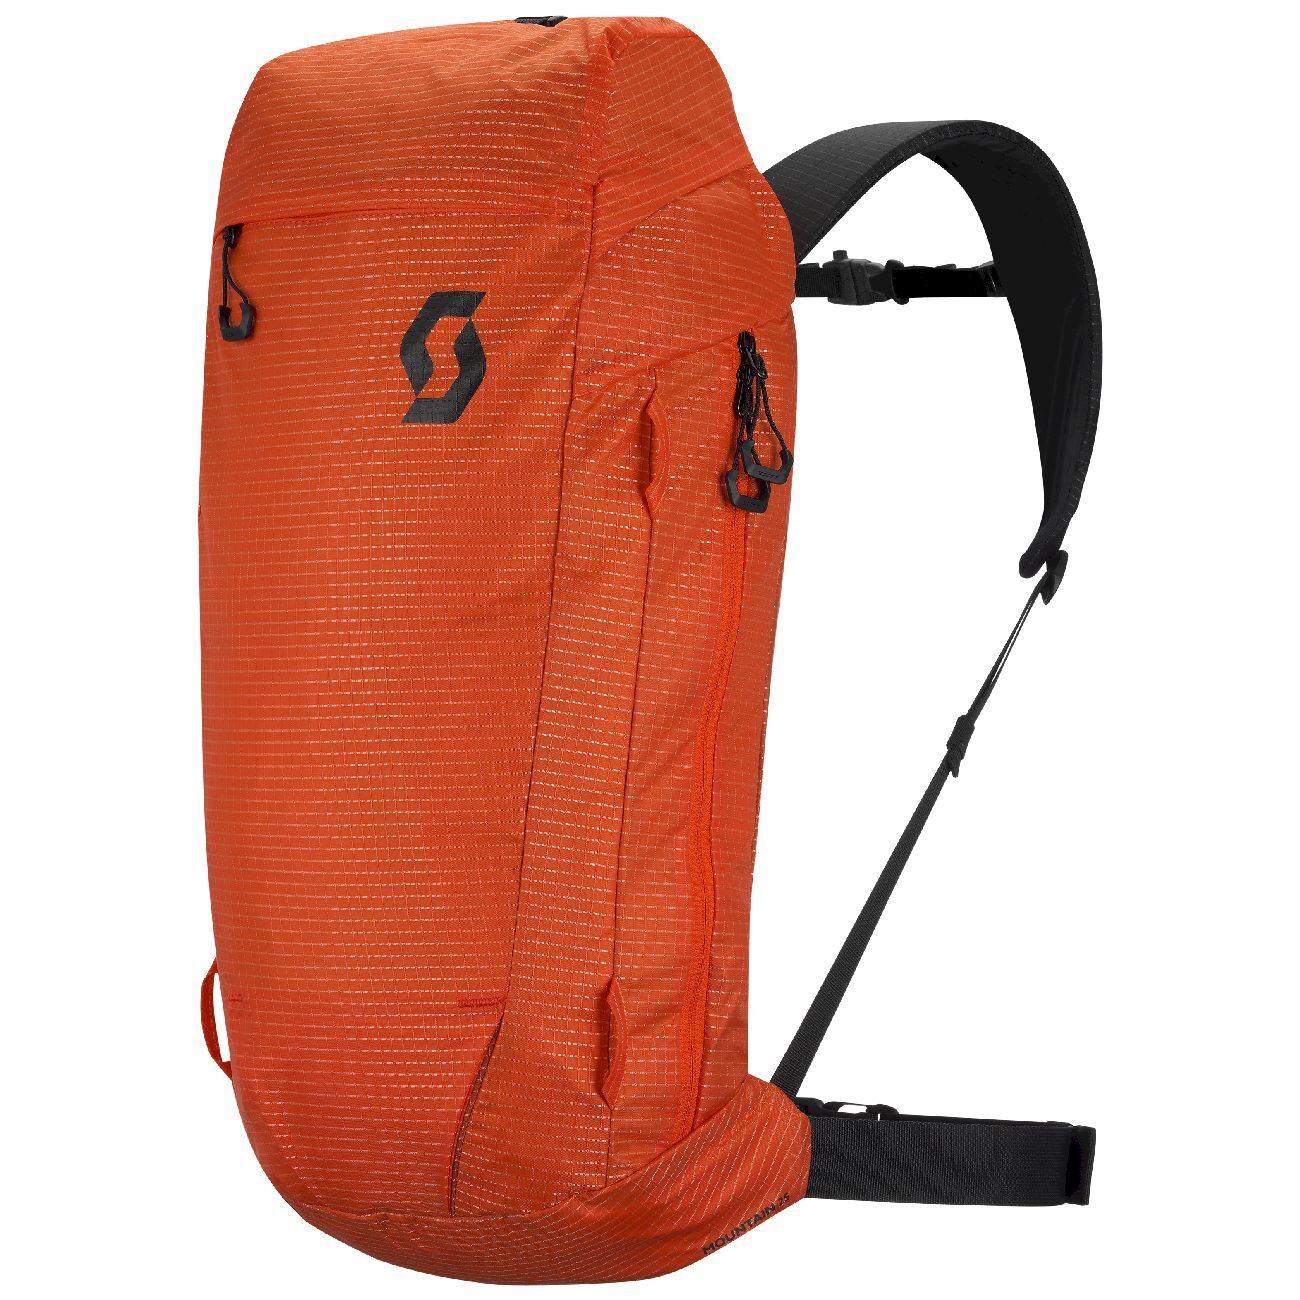 Scott Pack Mountain 25 - Ski backpack